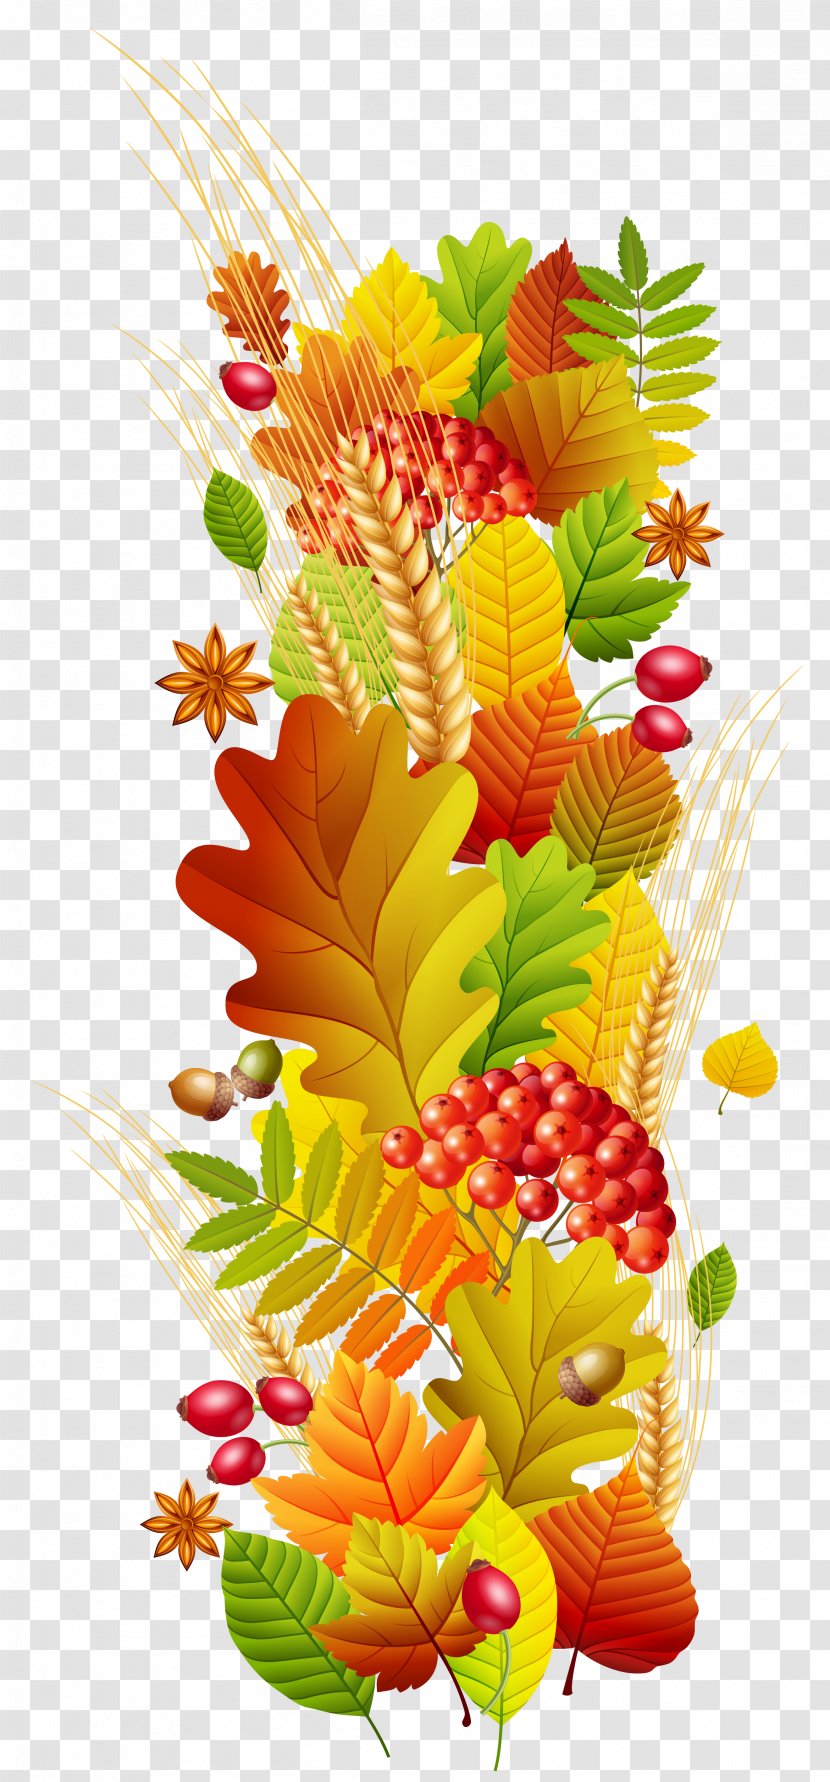 Autumn Season Floral Design Clip Art - Danderyds Bibliotek - Fall Deco Clipart Transparent Picture Transparent PNG